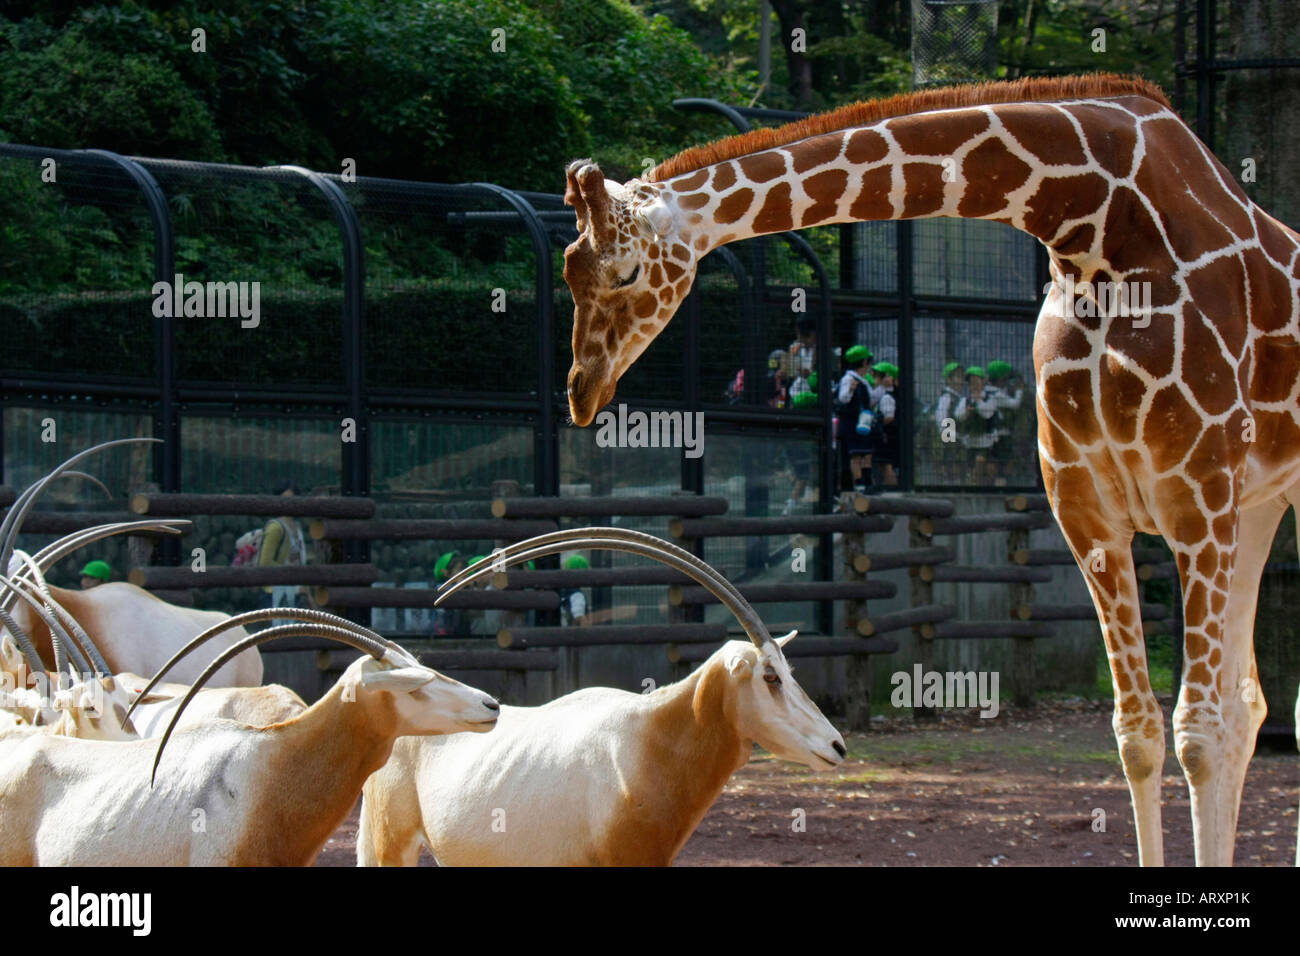 Giraffe and Oryx dammah in the Zoo Stock Photo